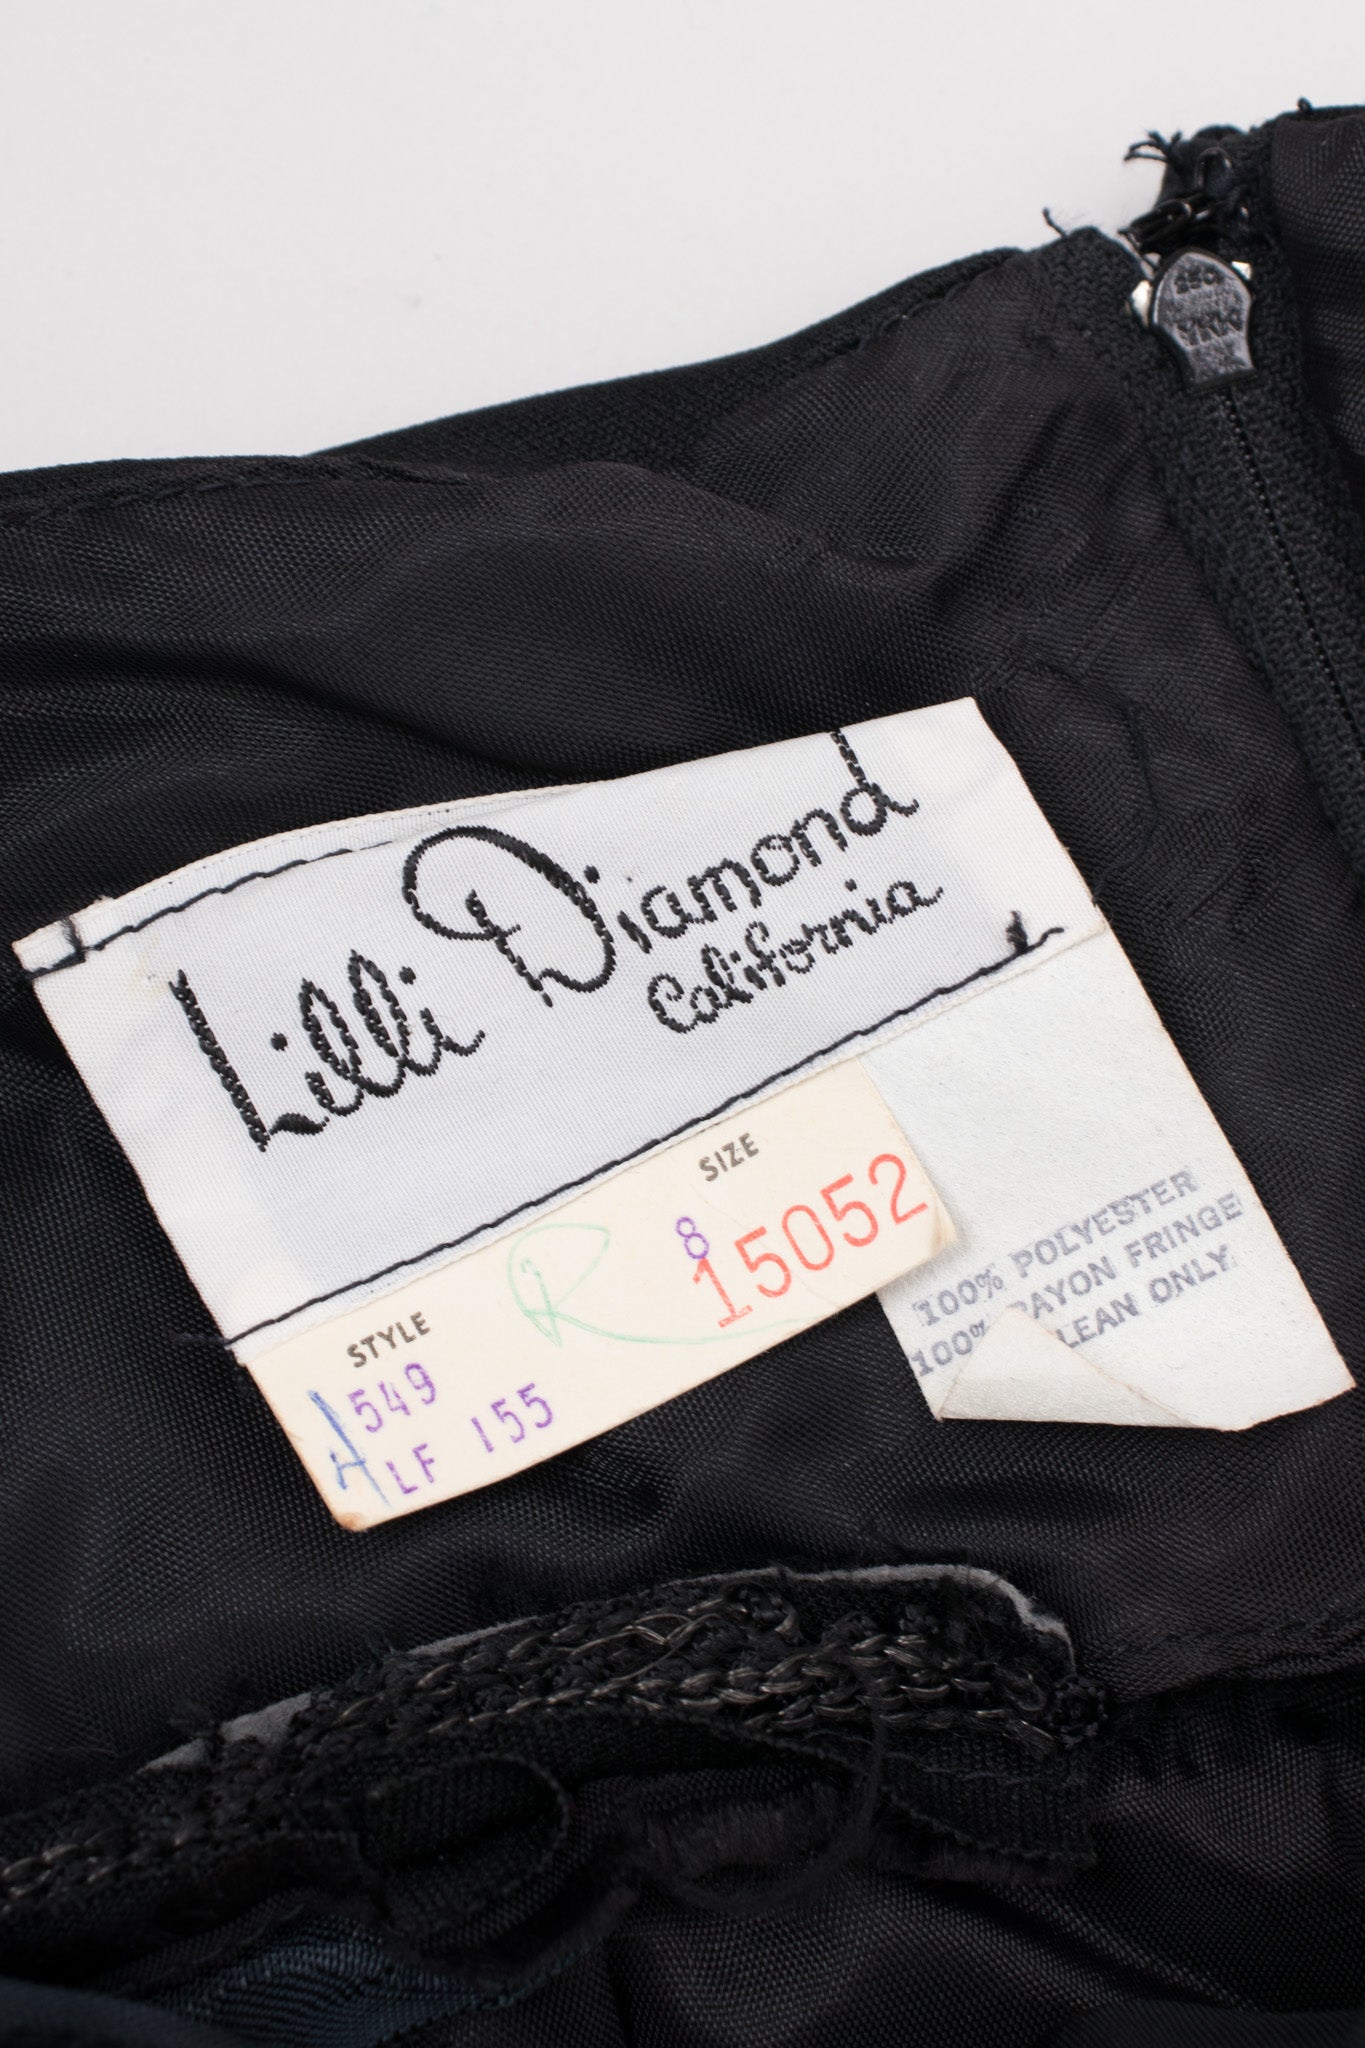 Lilli Diamond Vintage Halter Fringe Dress